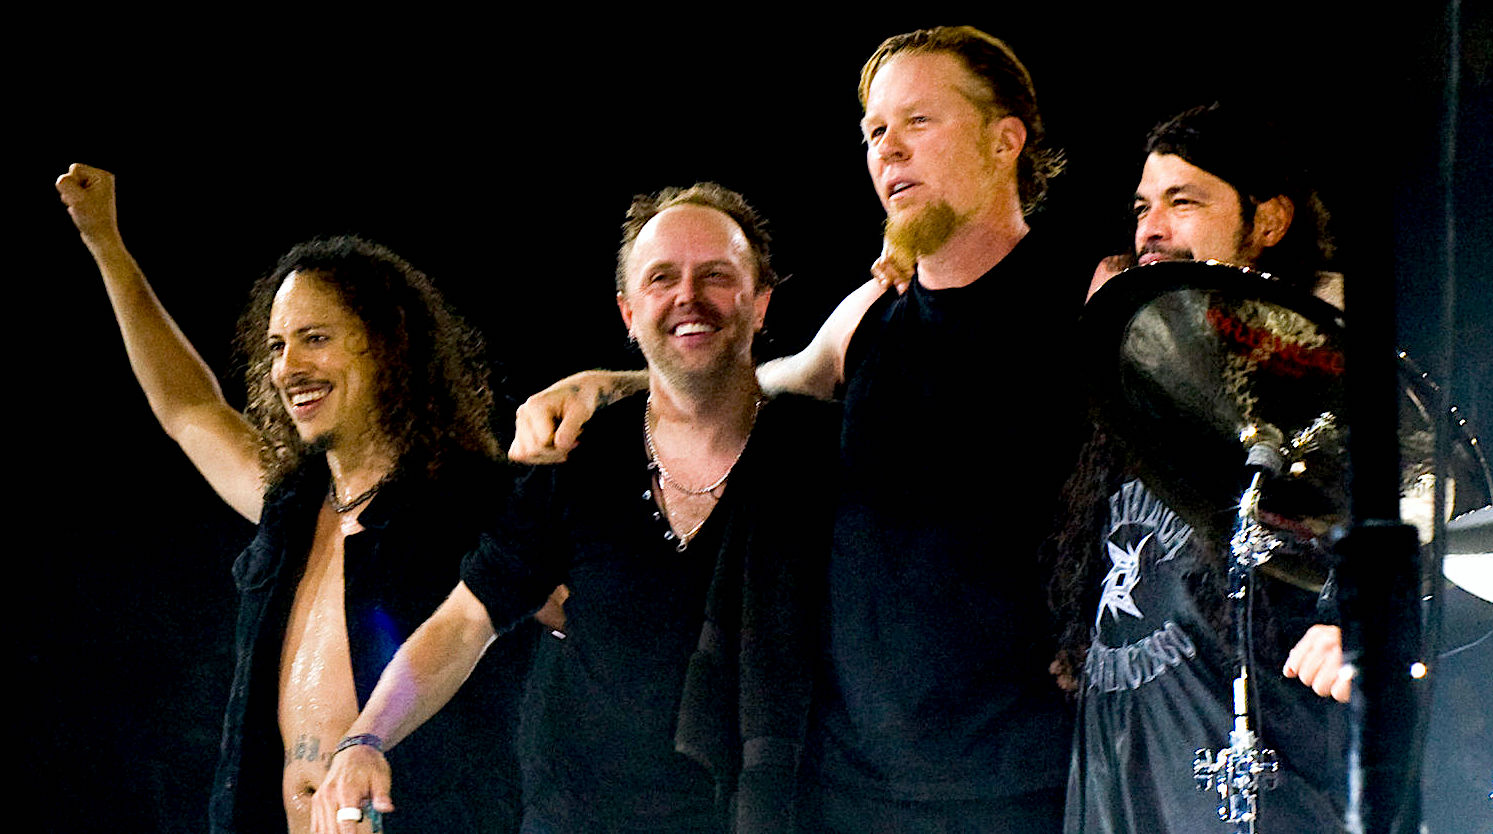 L'ingénieur de mixage explique pourquoi "Tout le monde détestait" l'album de Metallica sur lequel il a travaillé, explique ce que les gens "oublient" à propos du groupe